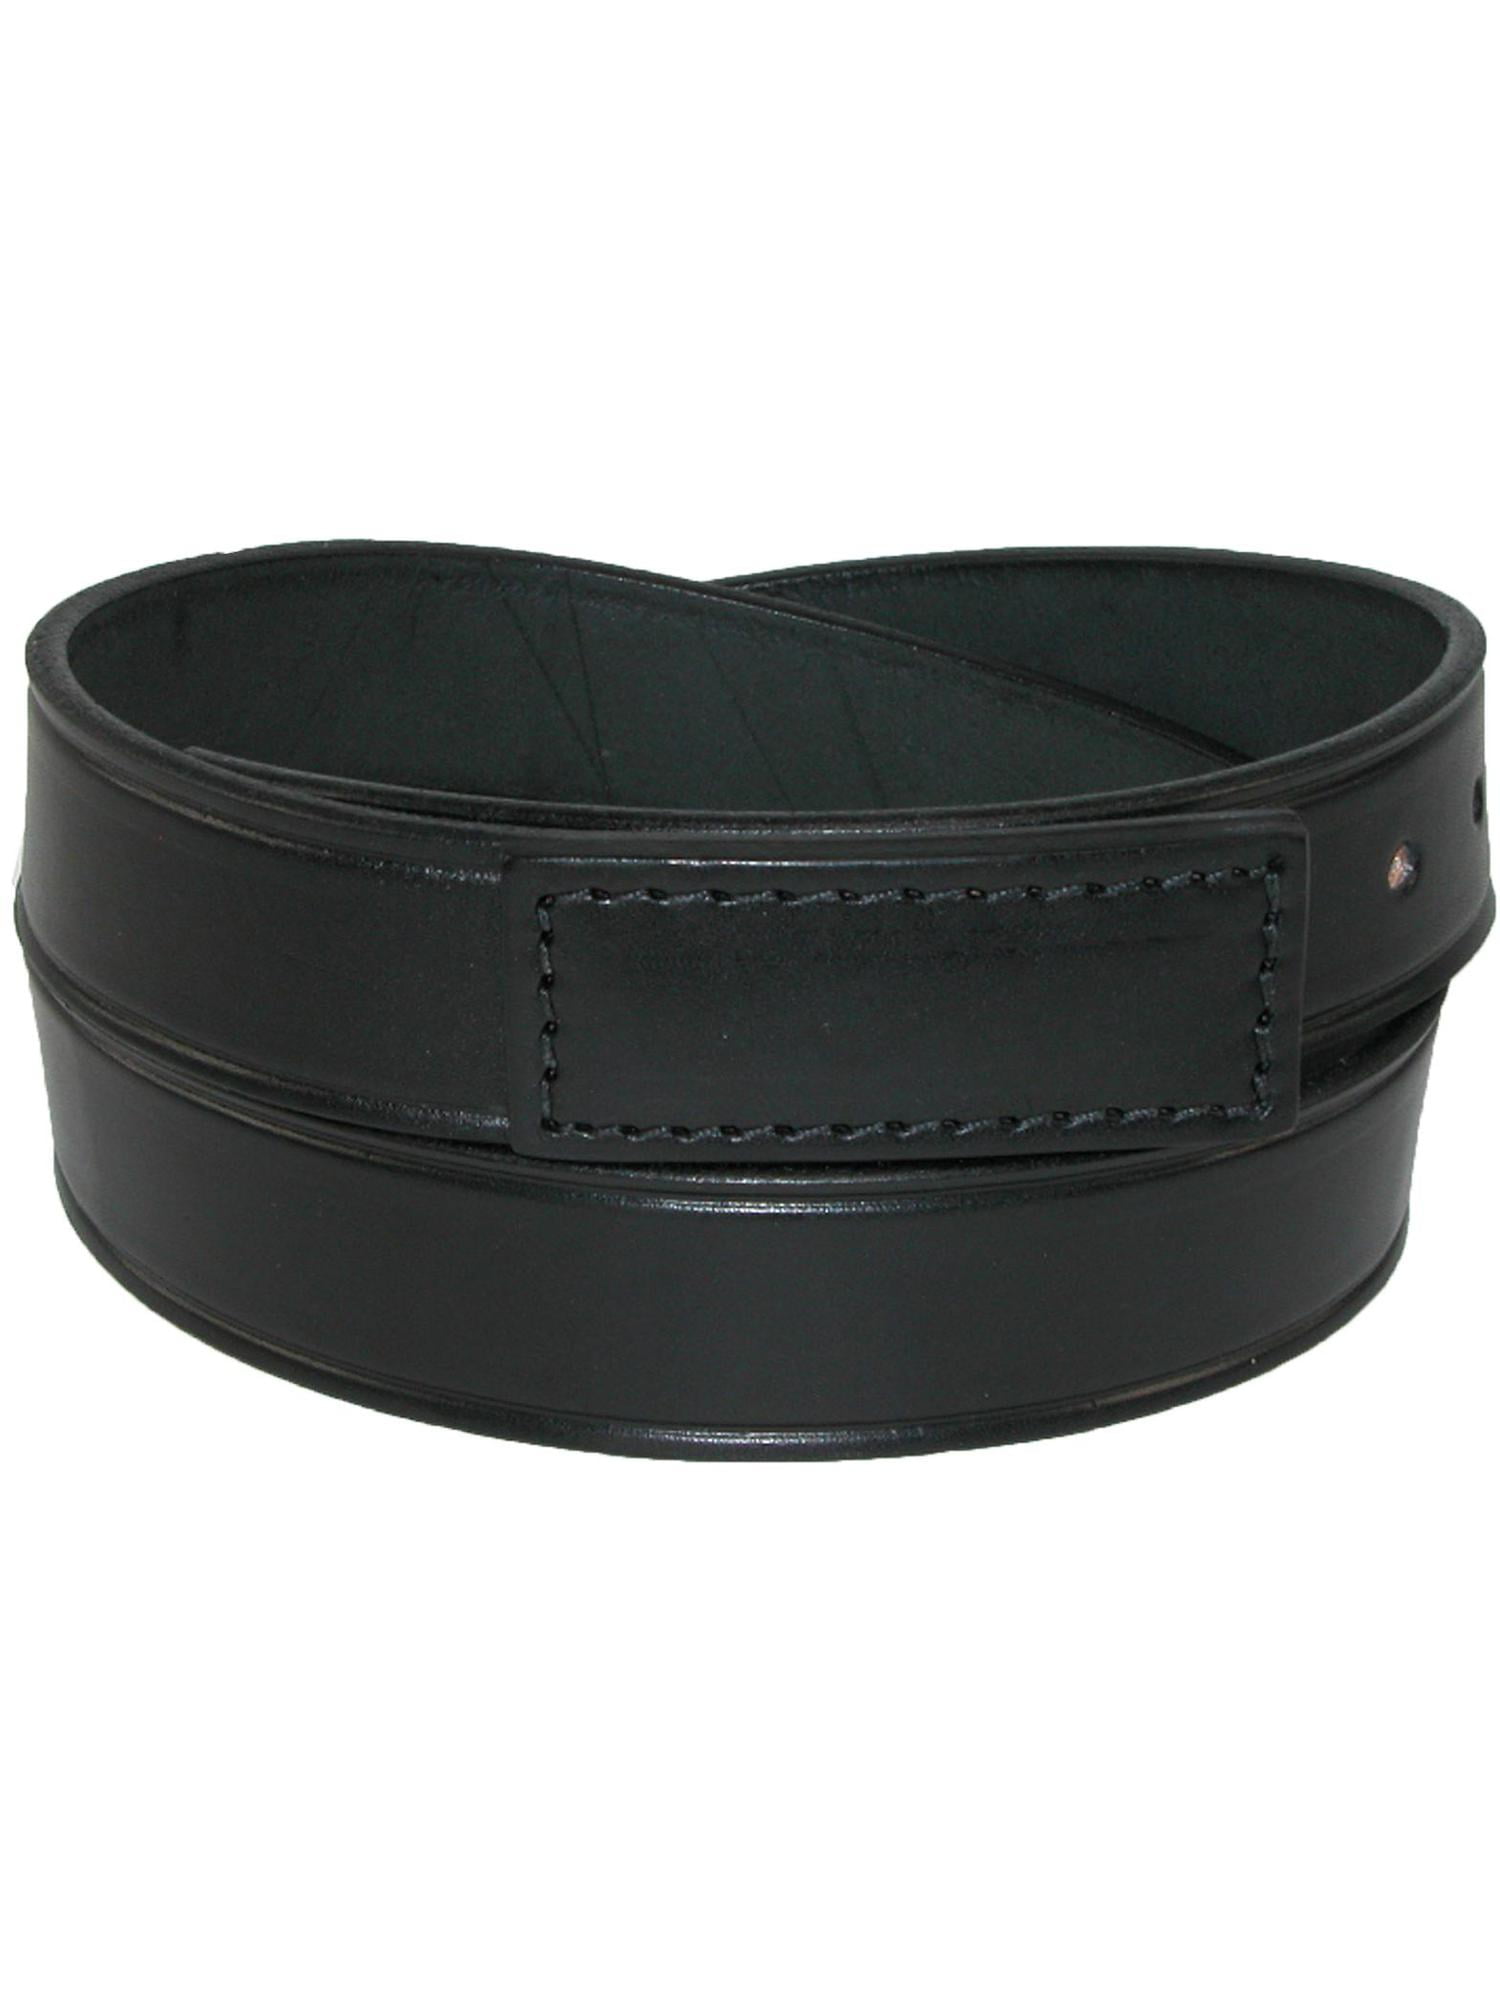 Men's Top Leather Belts for Men 5xl Big & Tall Black Solid Belt Workme